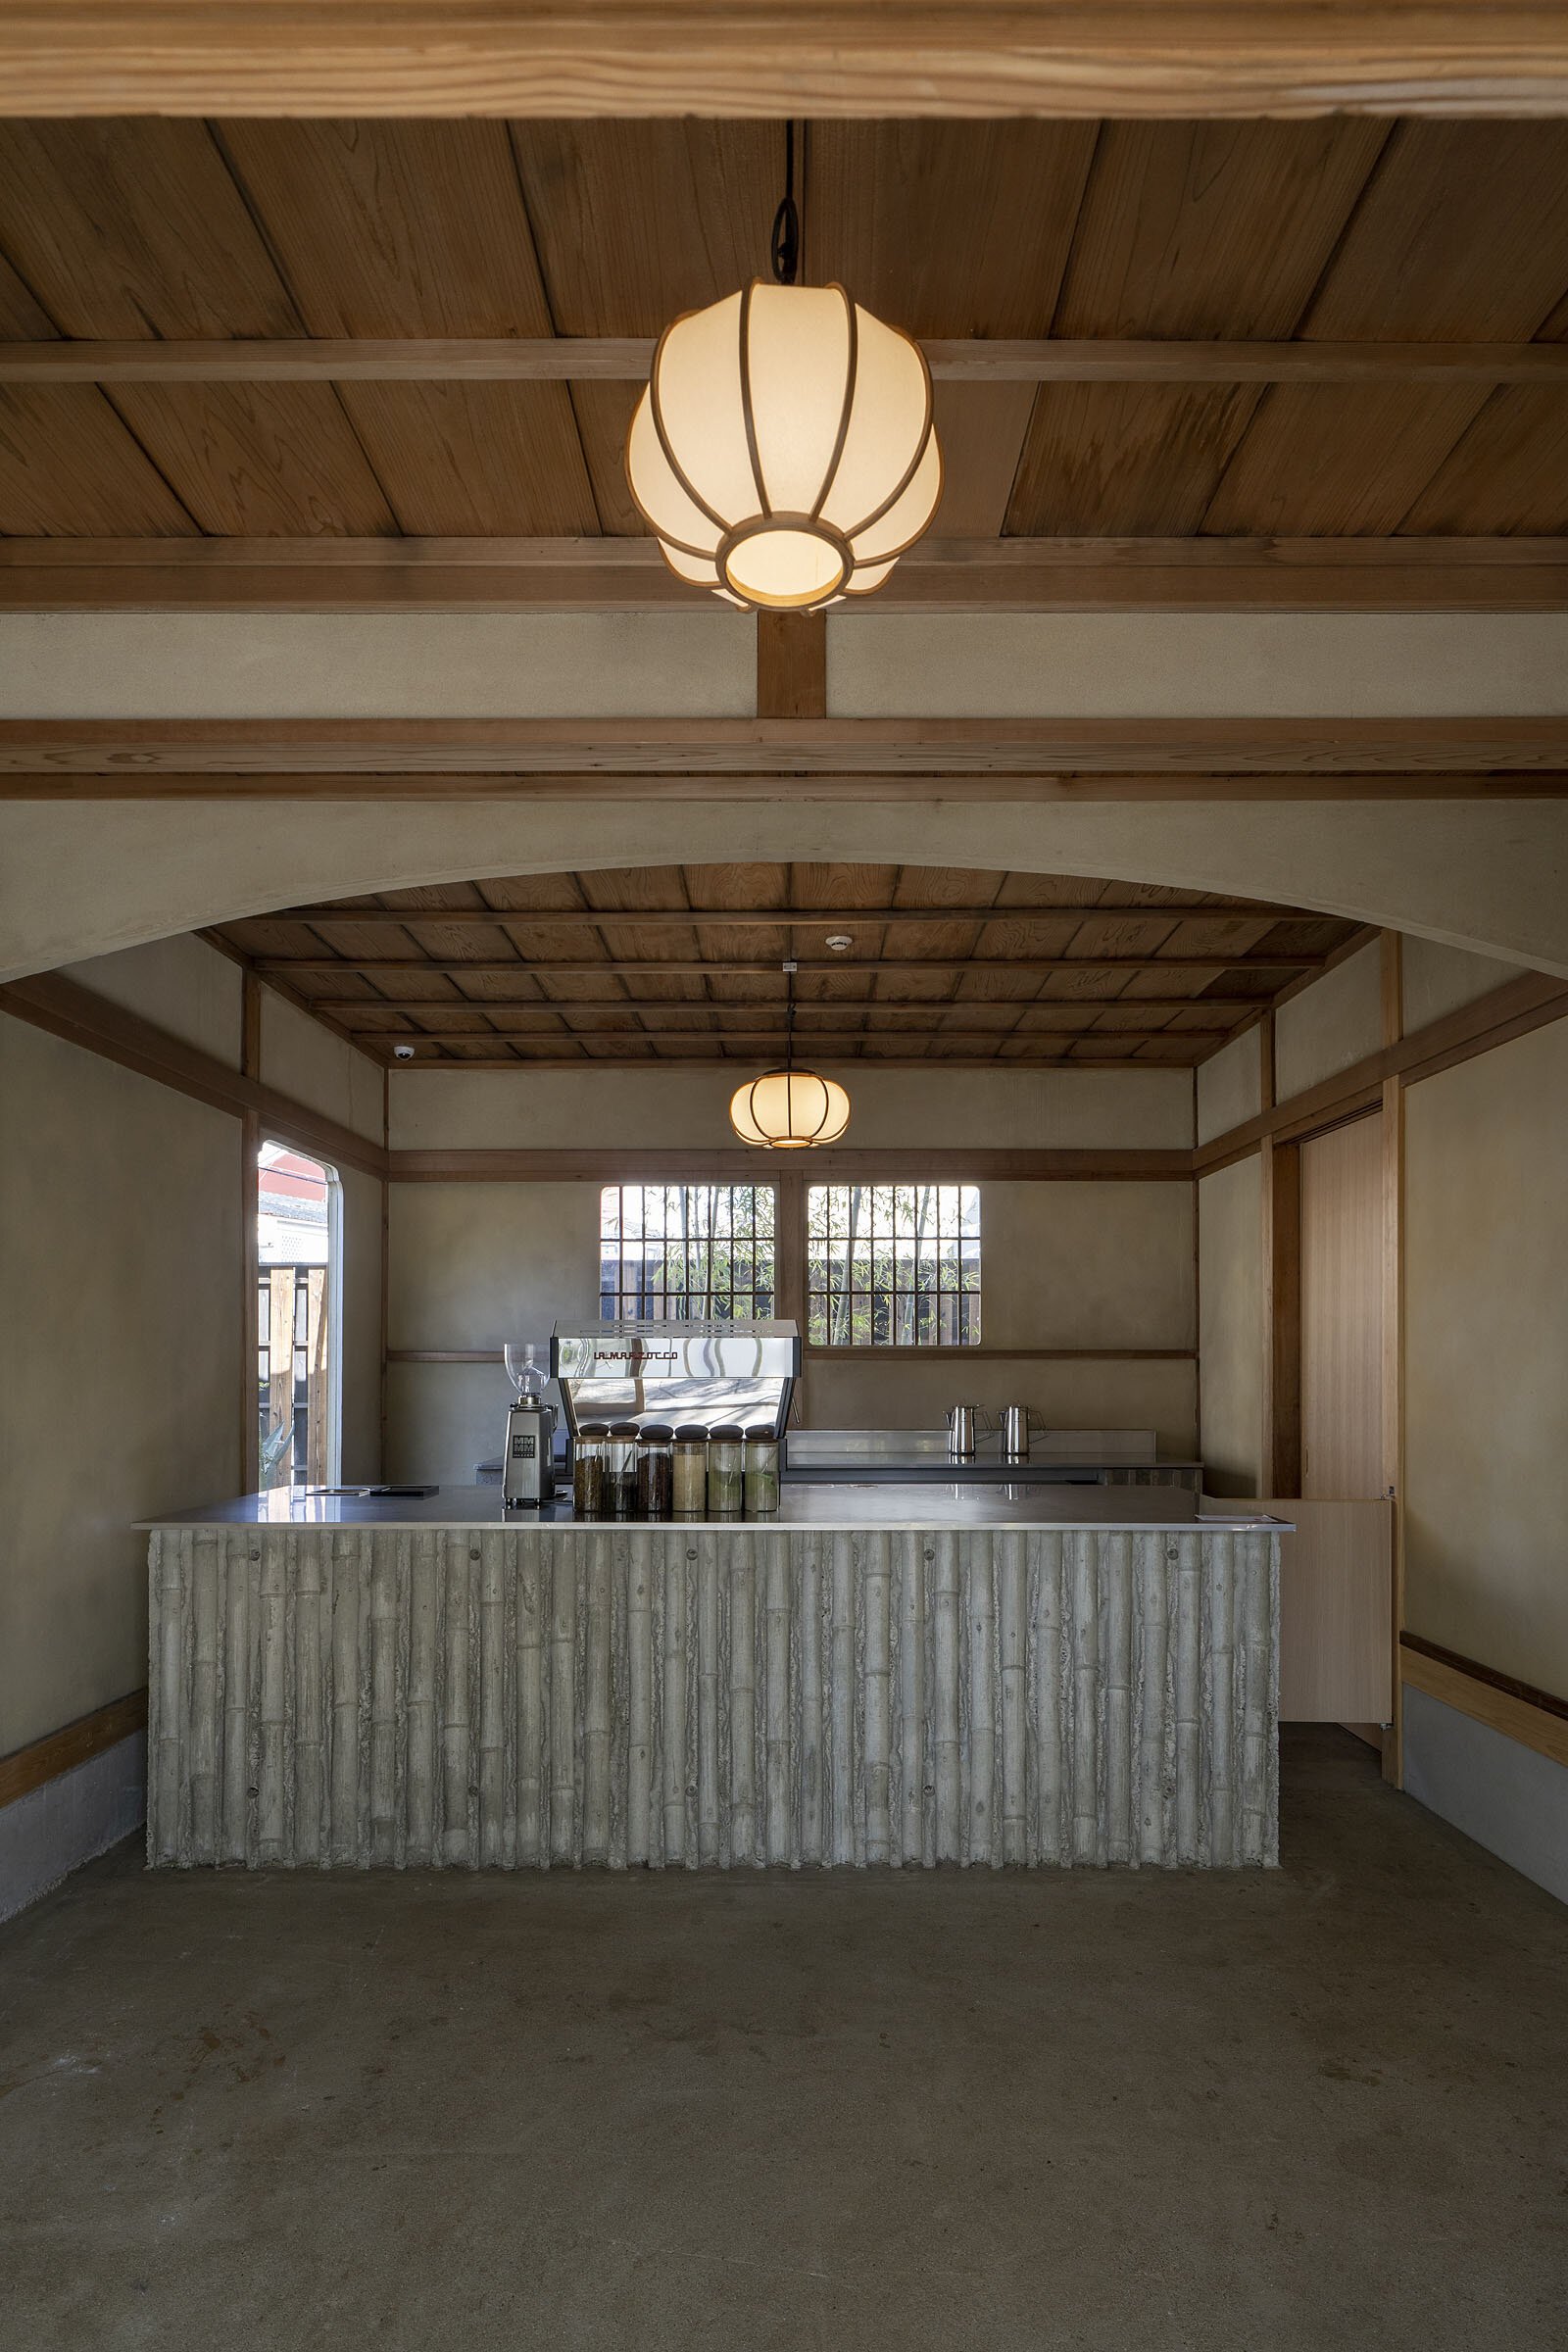  cafe co.の森井良幸がデザインしたスノーピークランドステーション京都嵐山のカフェカウンター 